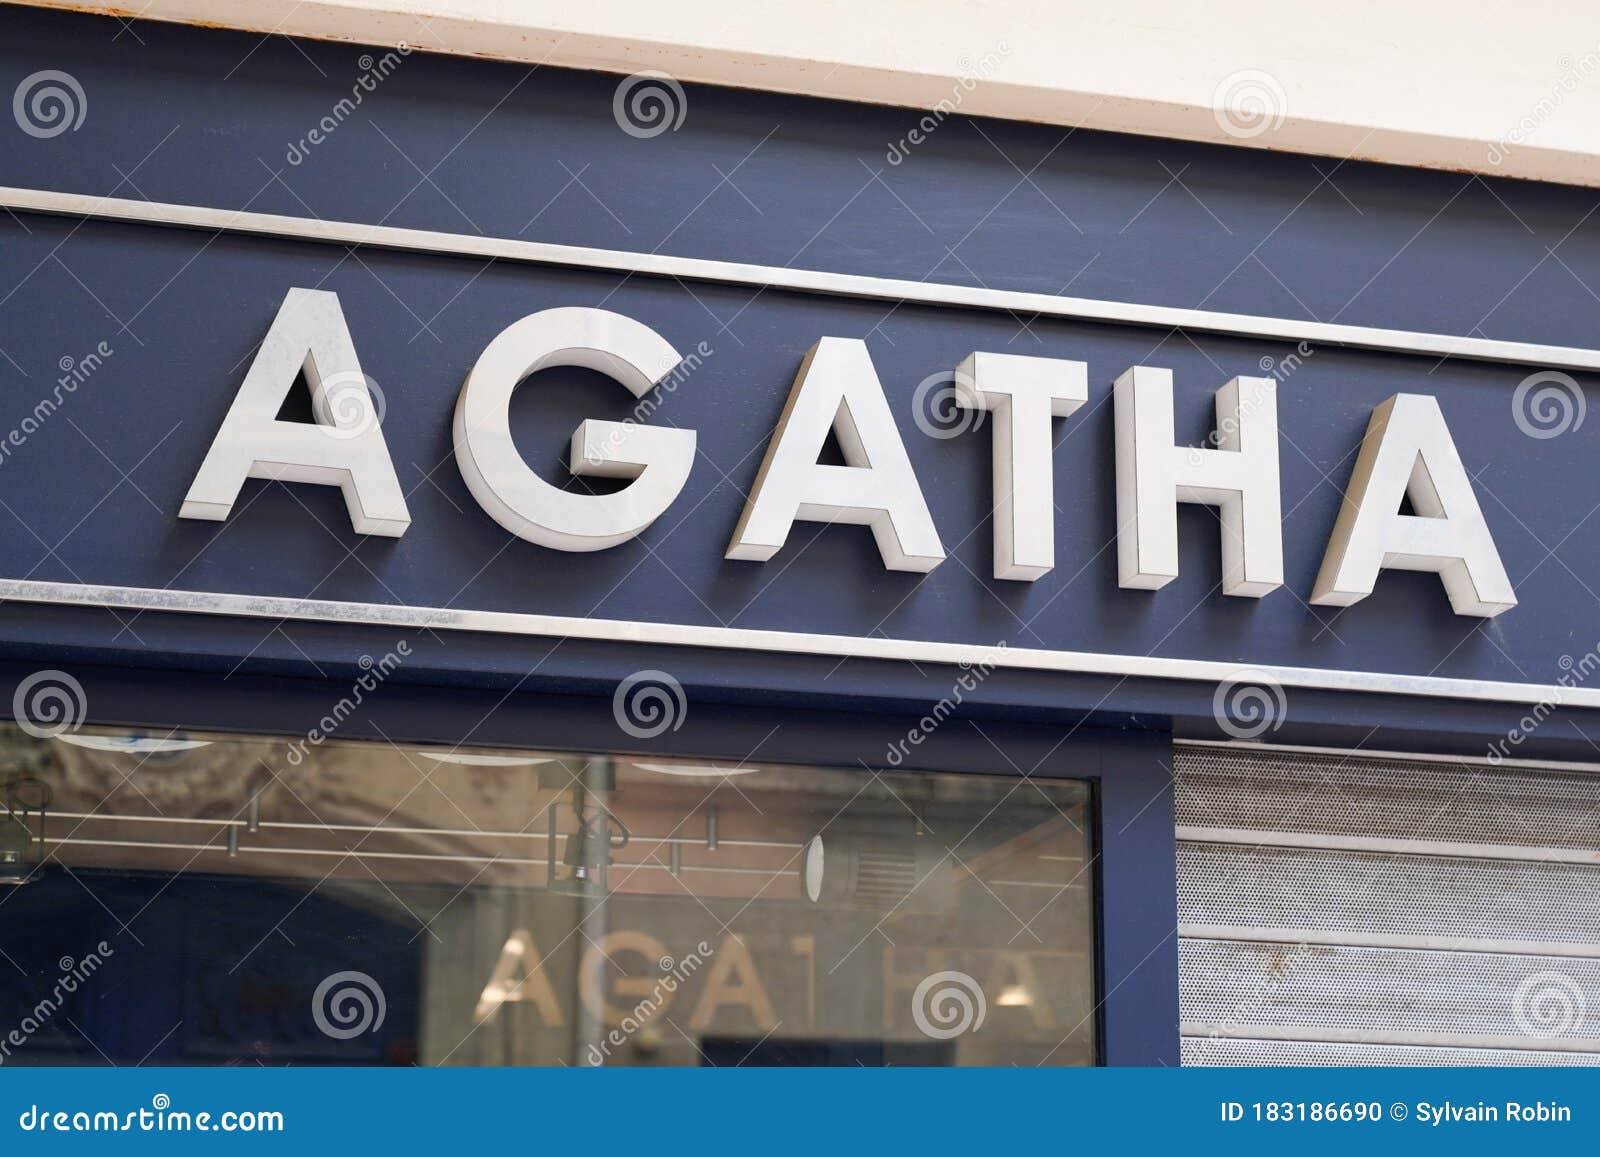 2020 Agatha